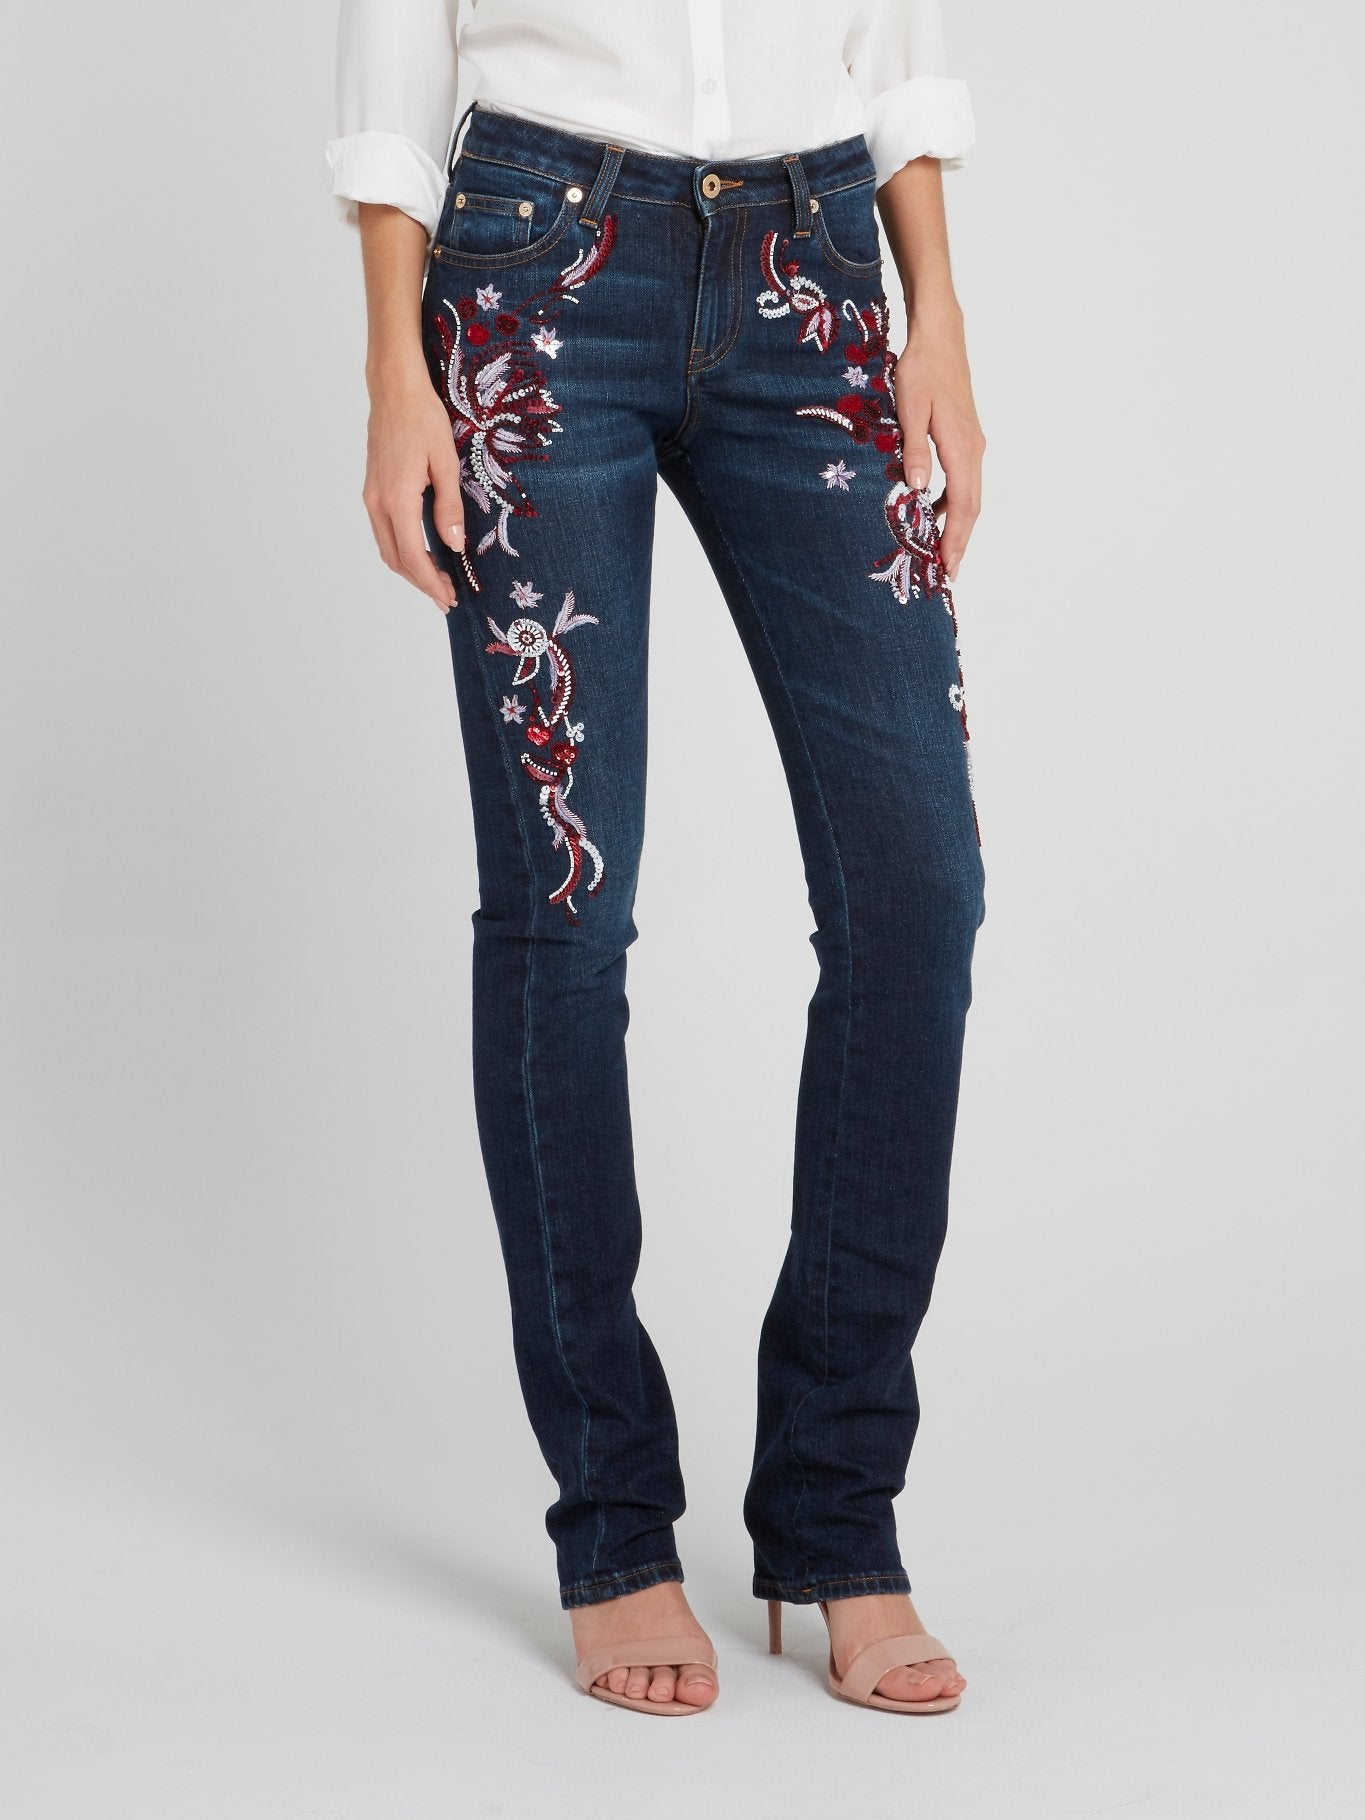 Sequin Detail Slim Fit Jeans